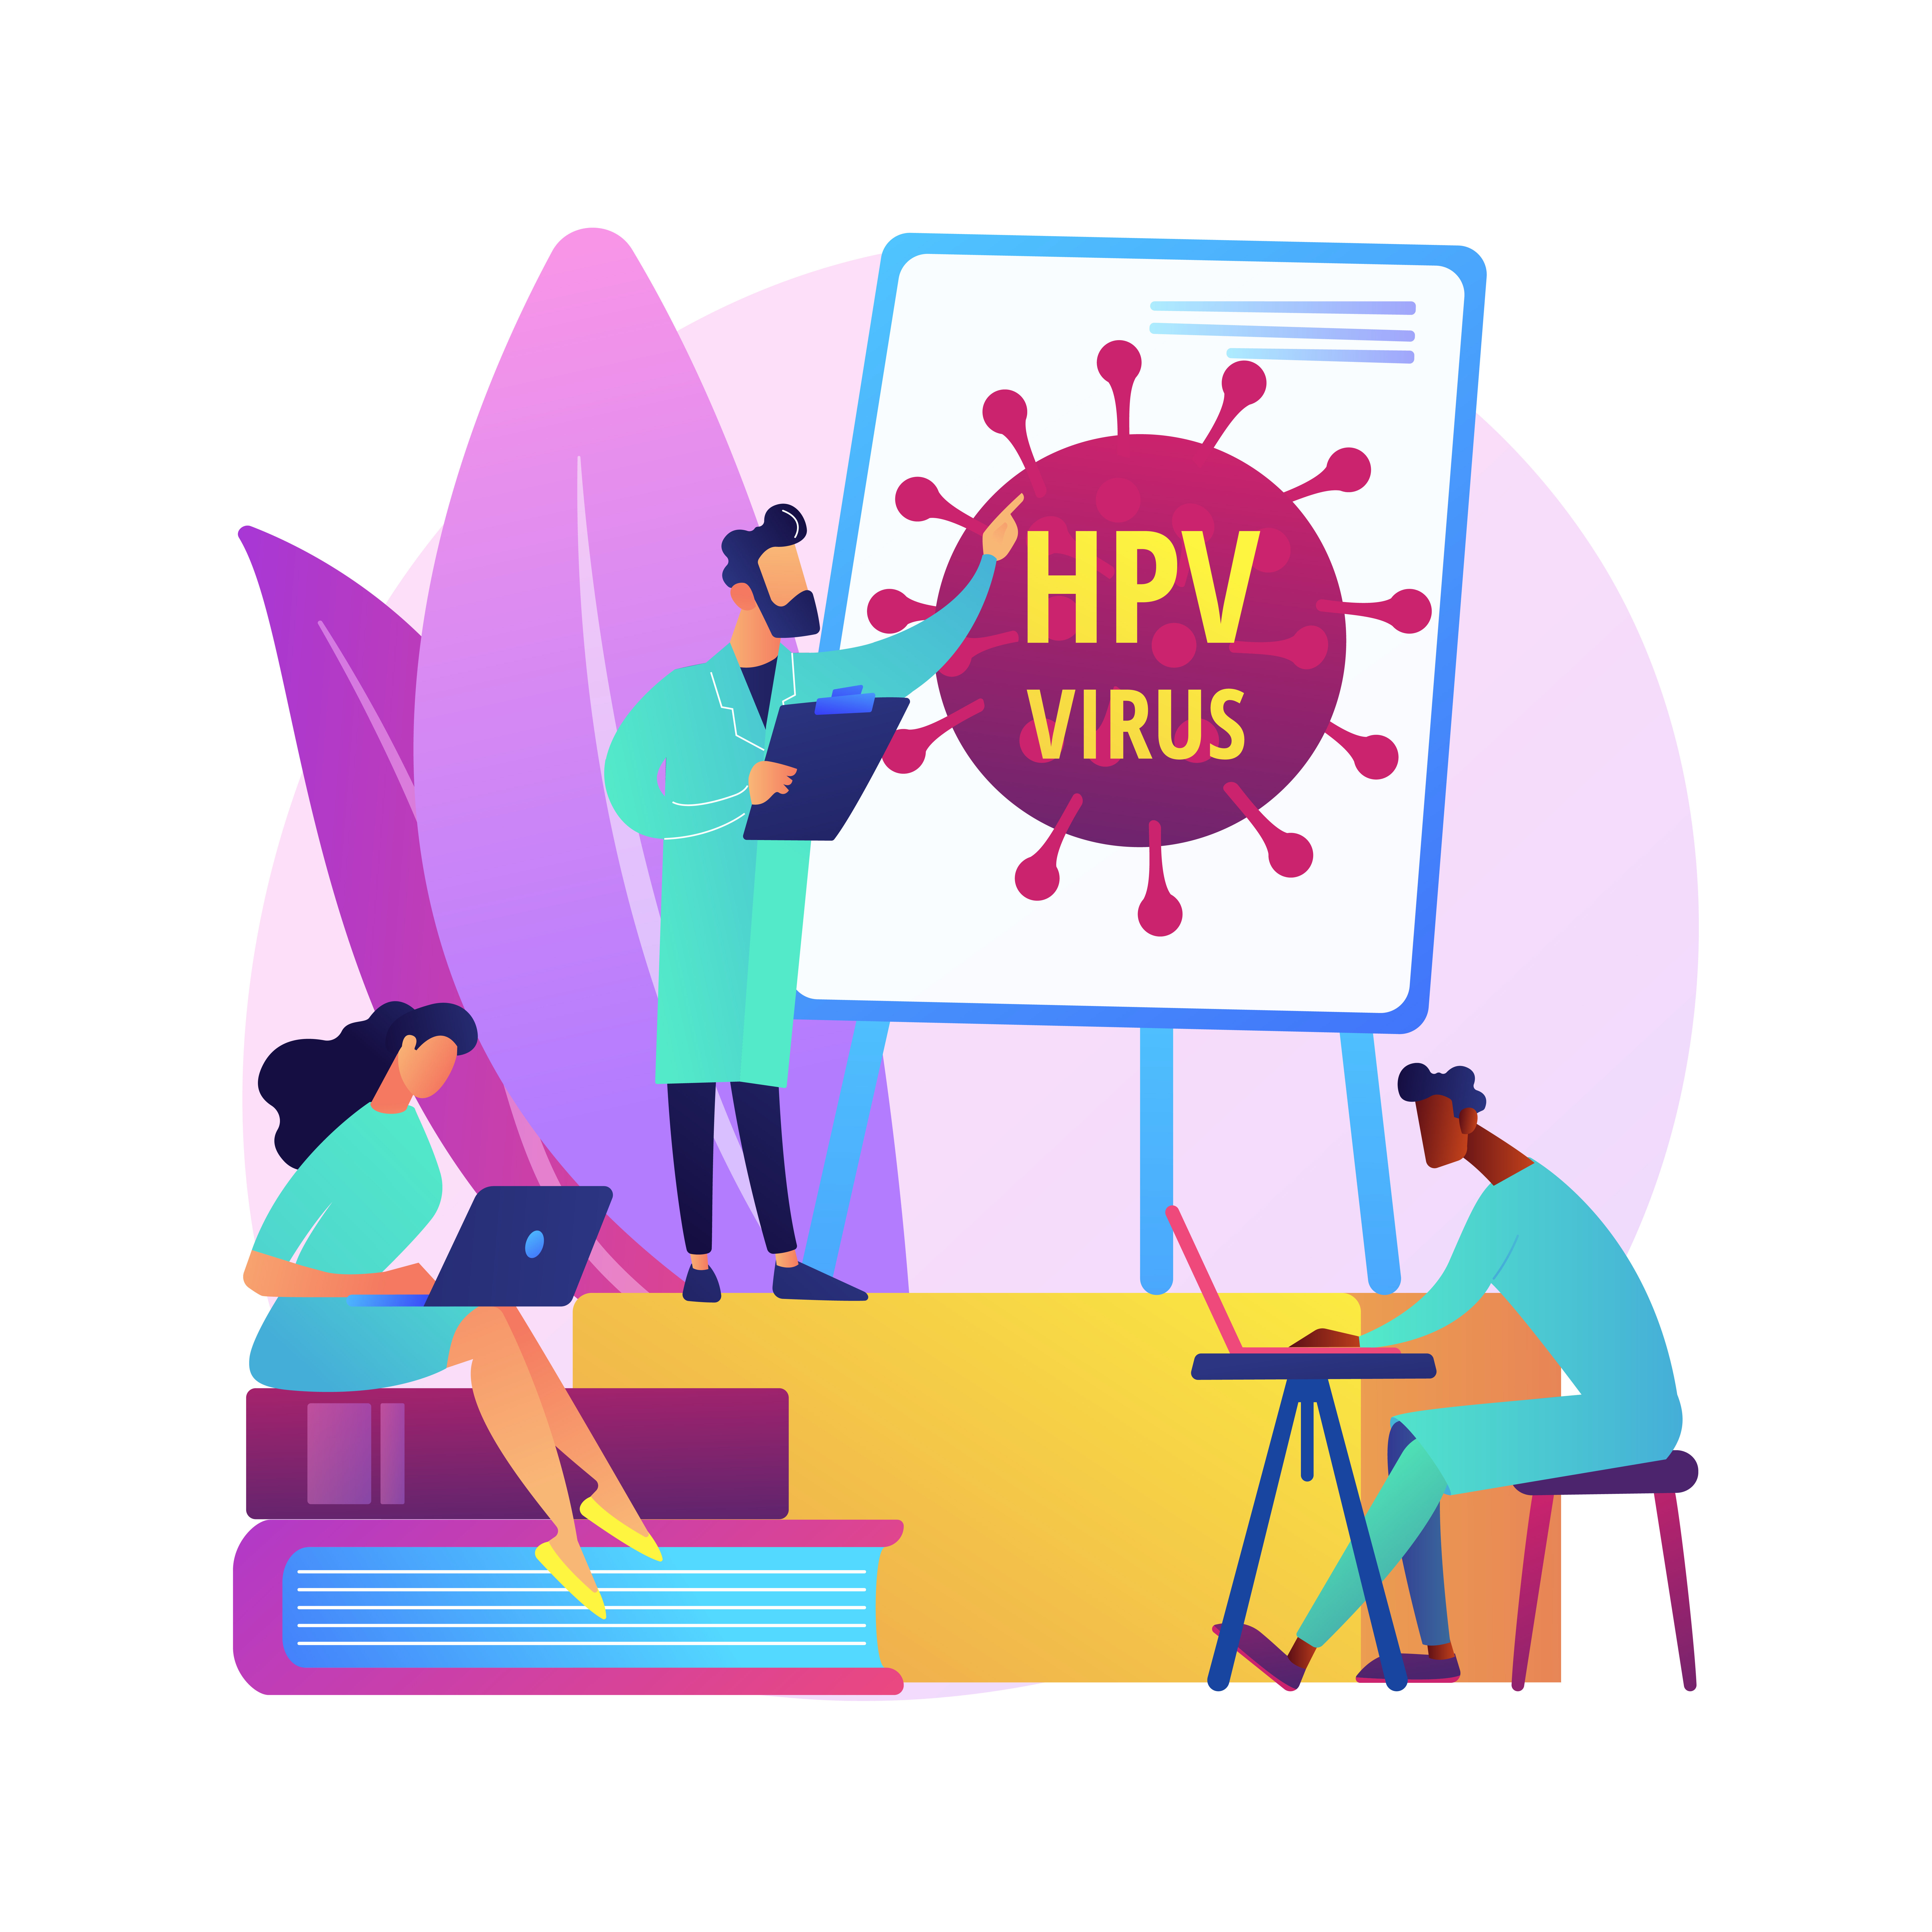 HPV e cancro vaccinazione e screening importanti per la prevenzione